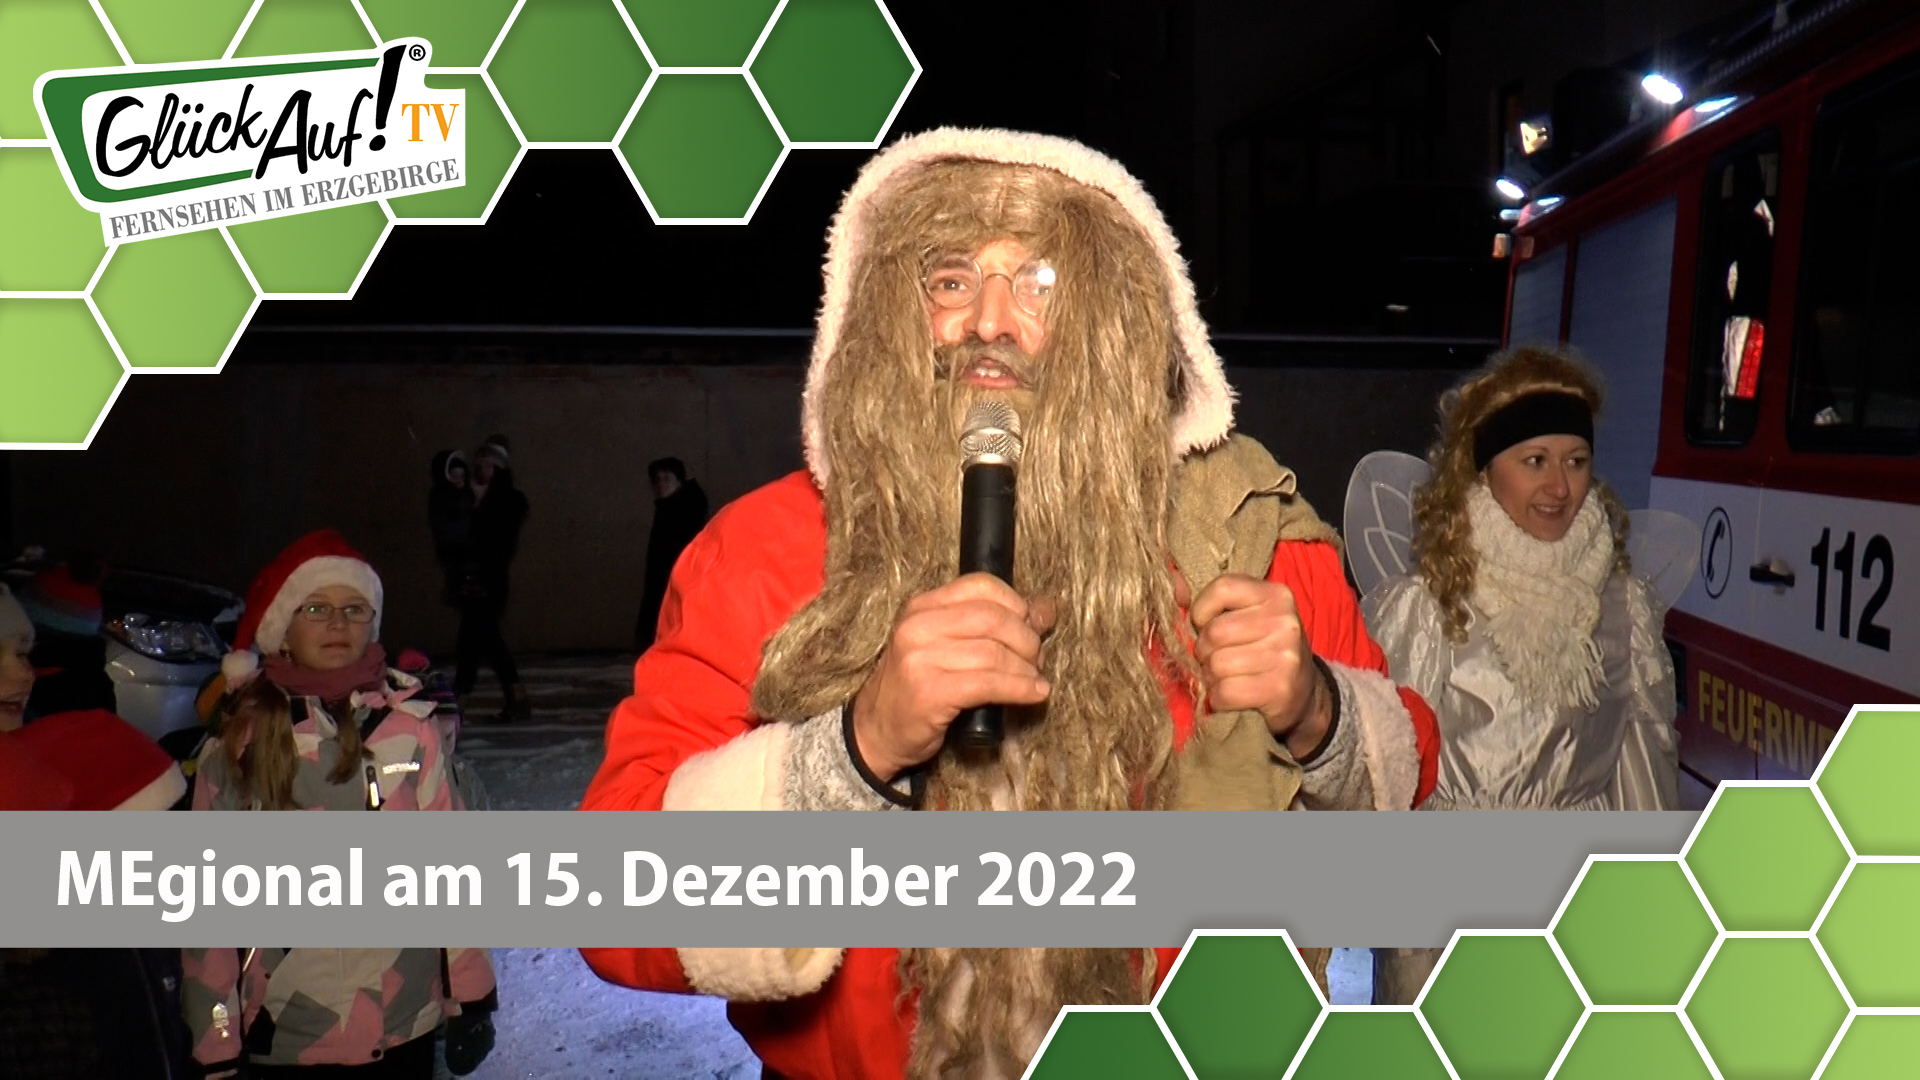 MEgional am 15. Dezember 2022 - mit dem Weihnachtsmarkt in Rechenberg-Bienenmühle